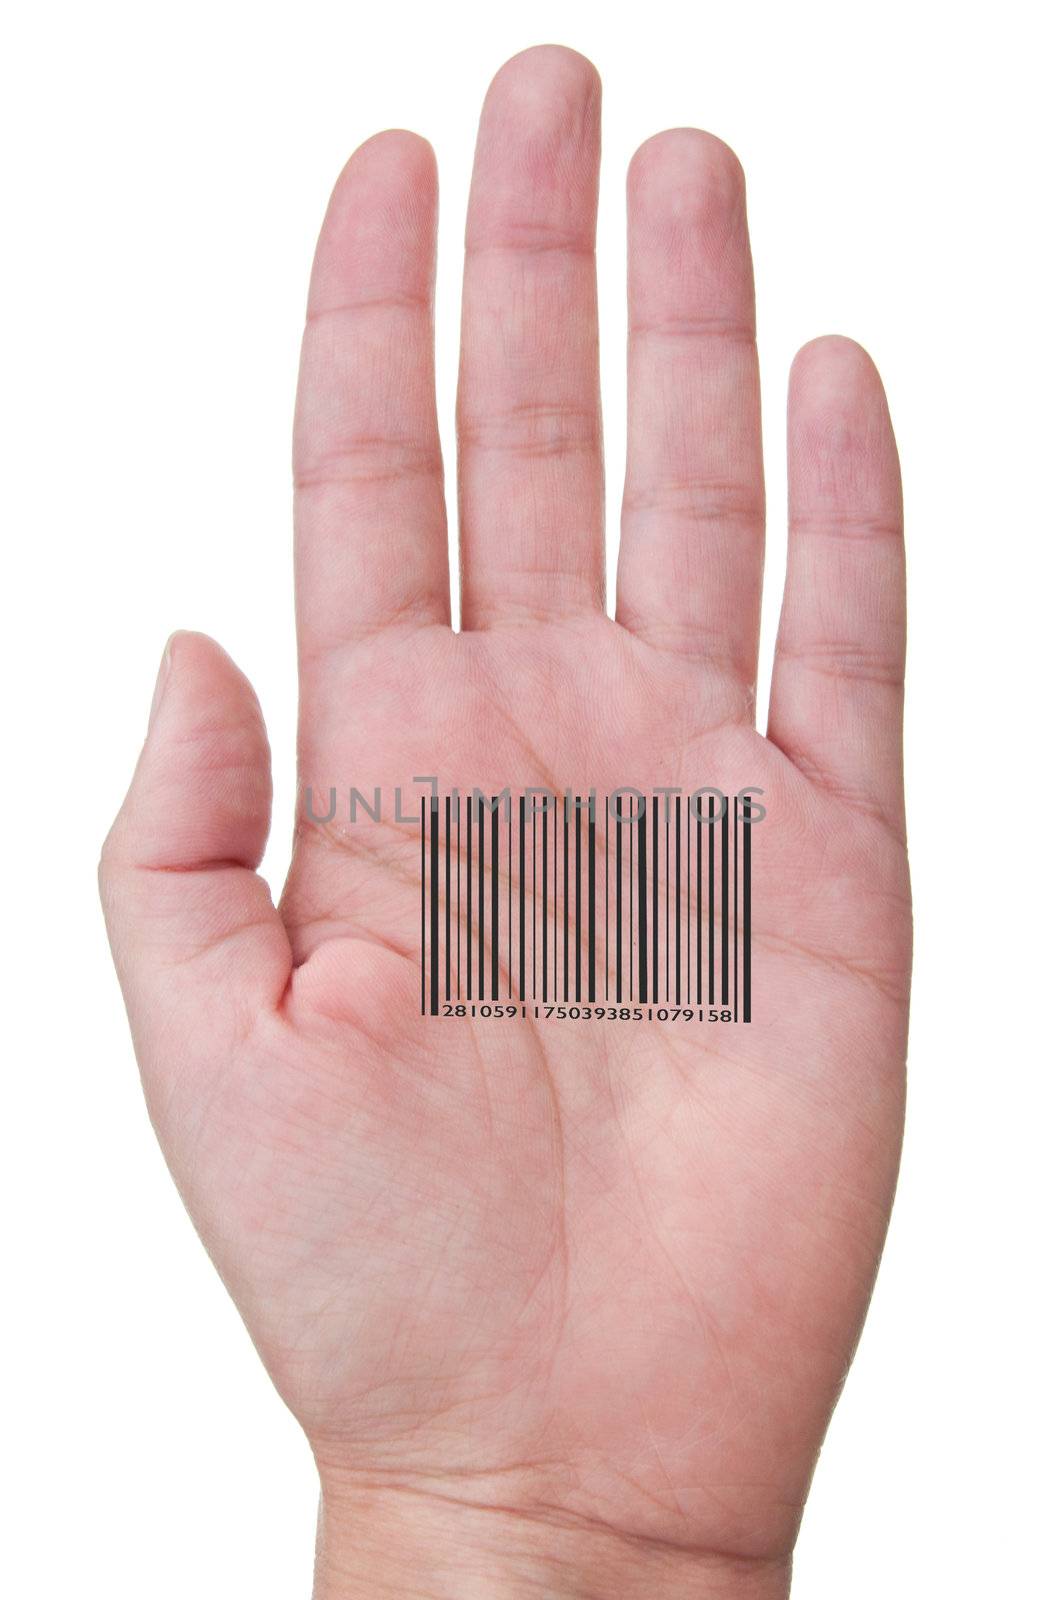 Human barcode  by unikpix